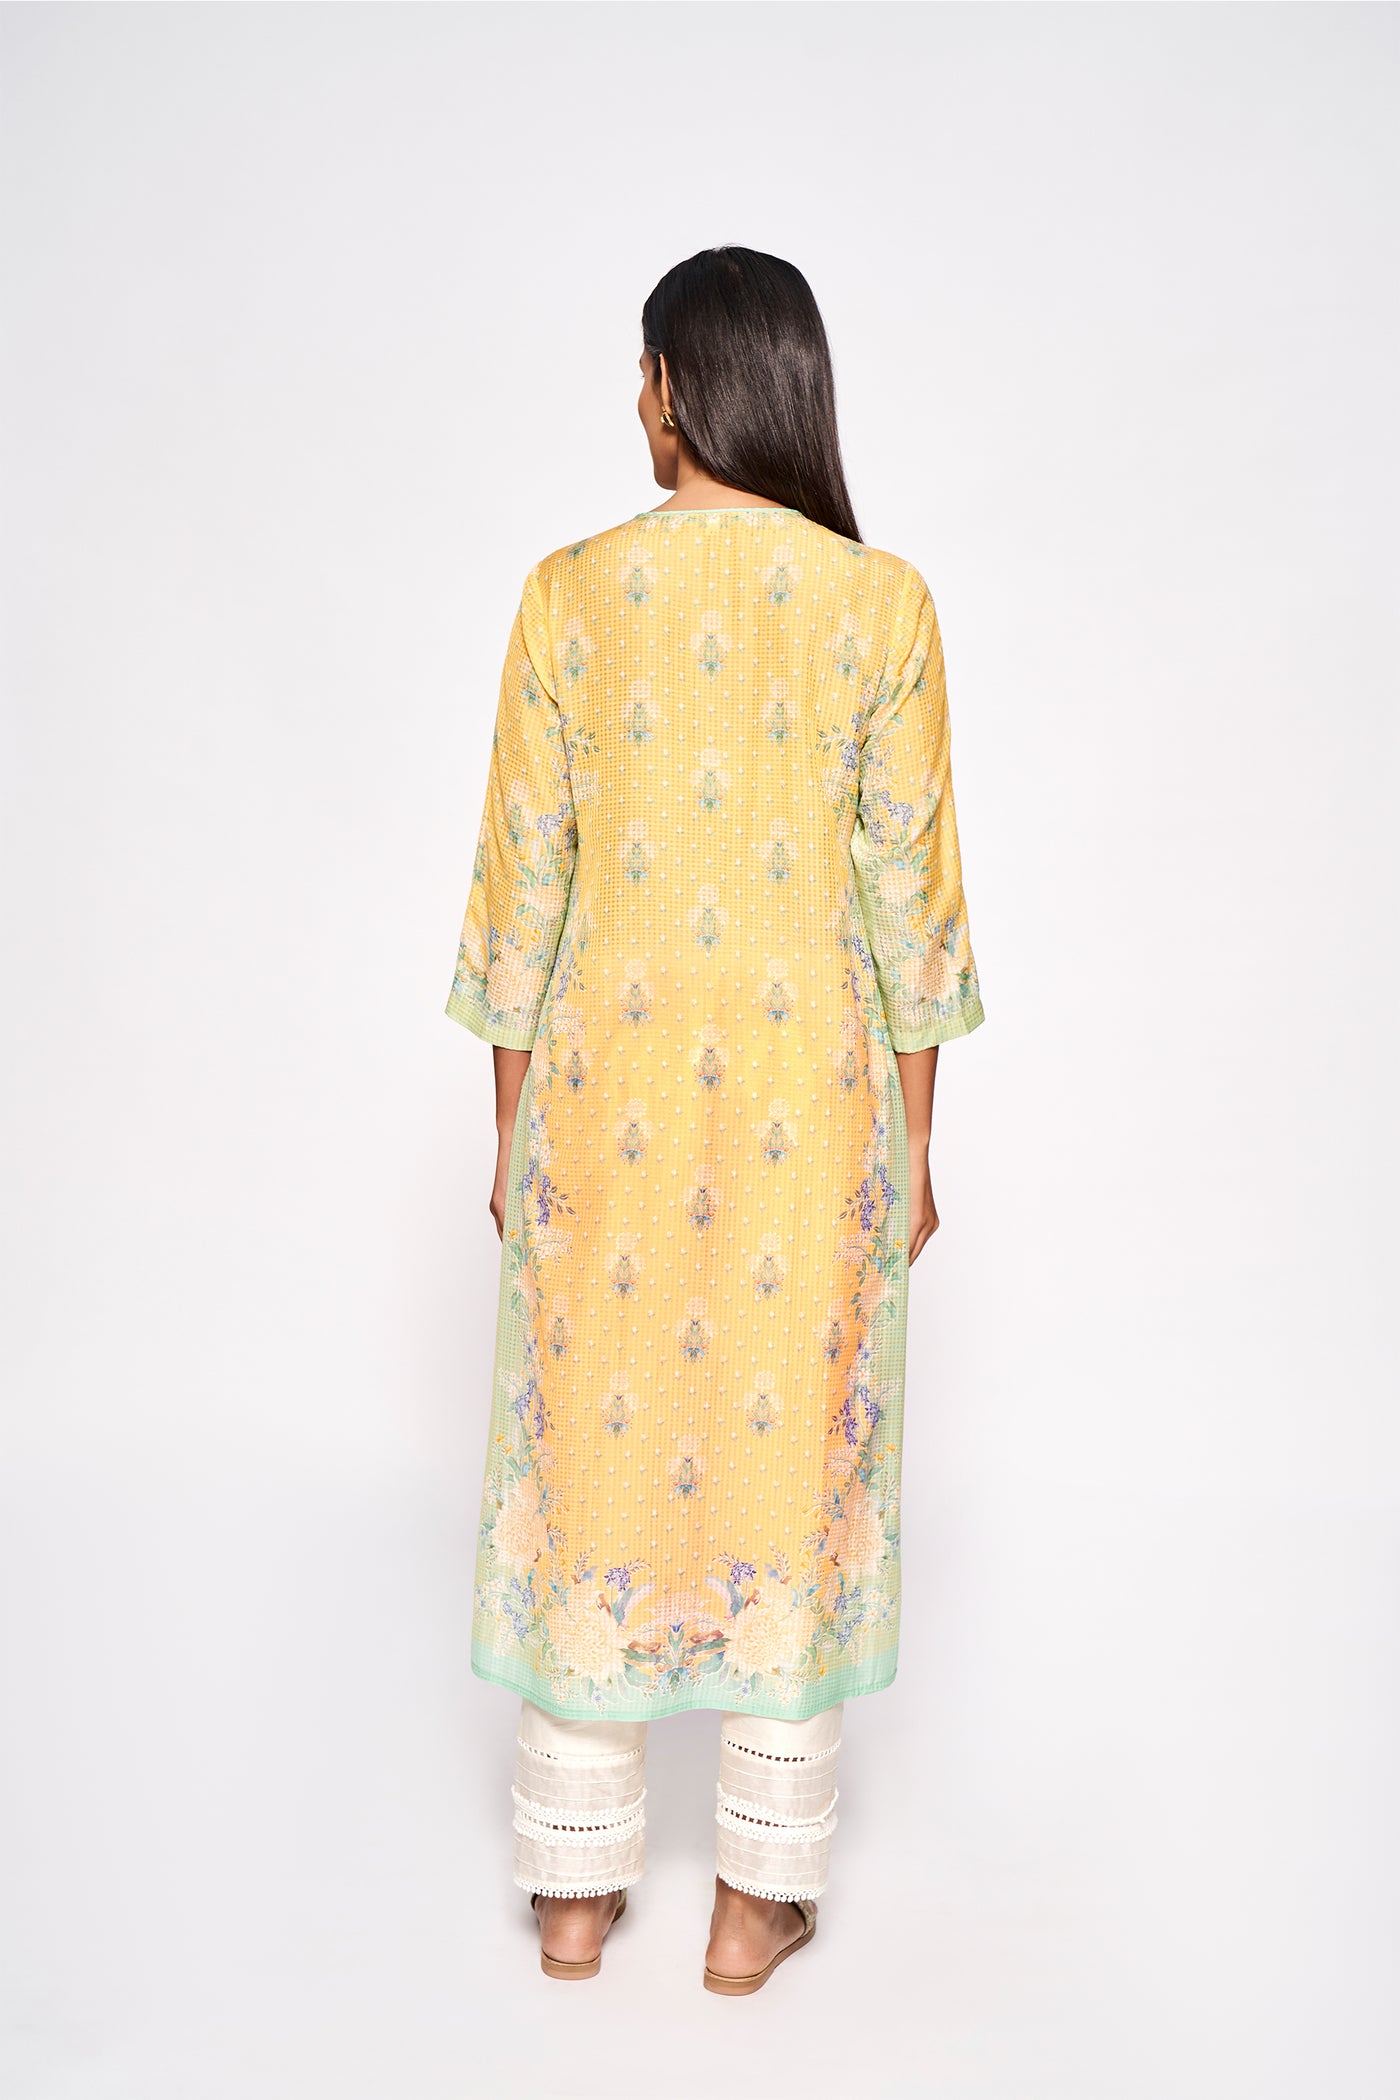 Anita Dongre Shaivi Kurta Yellow indian designer wear online shopping melange singapore